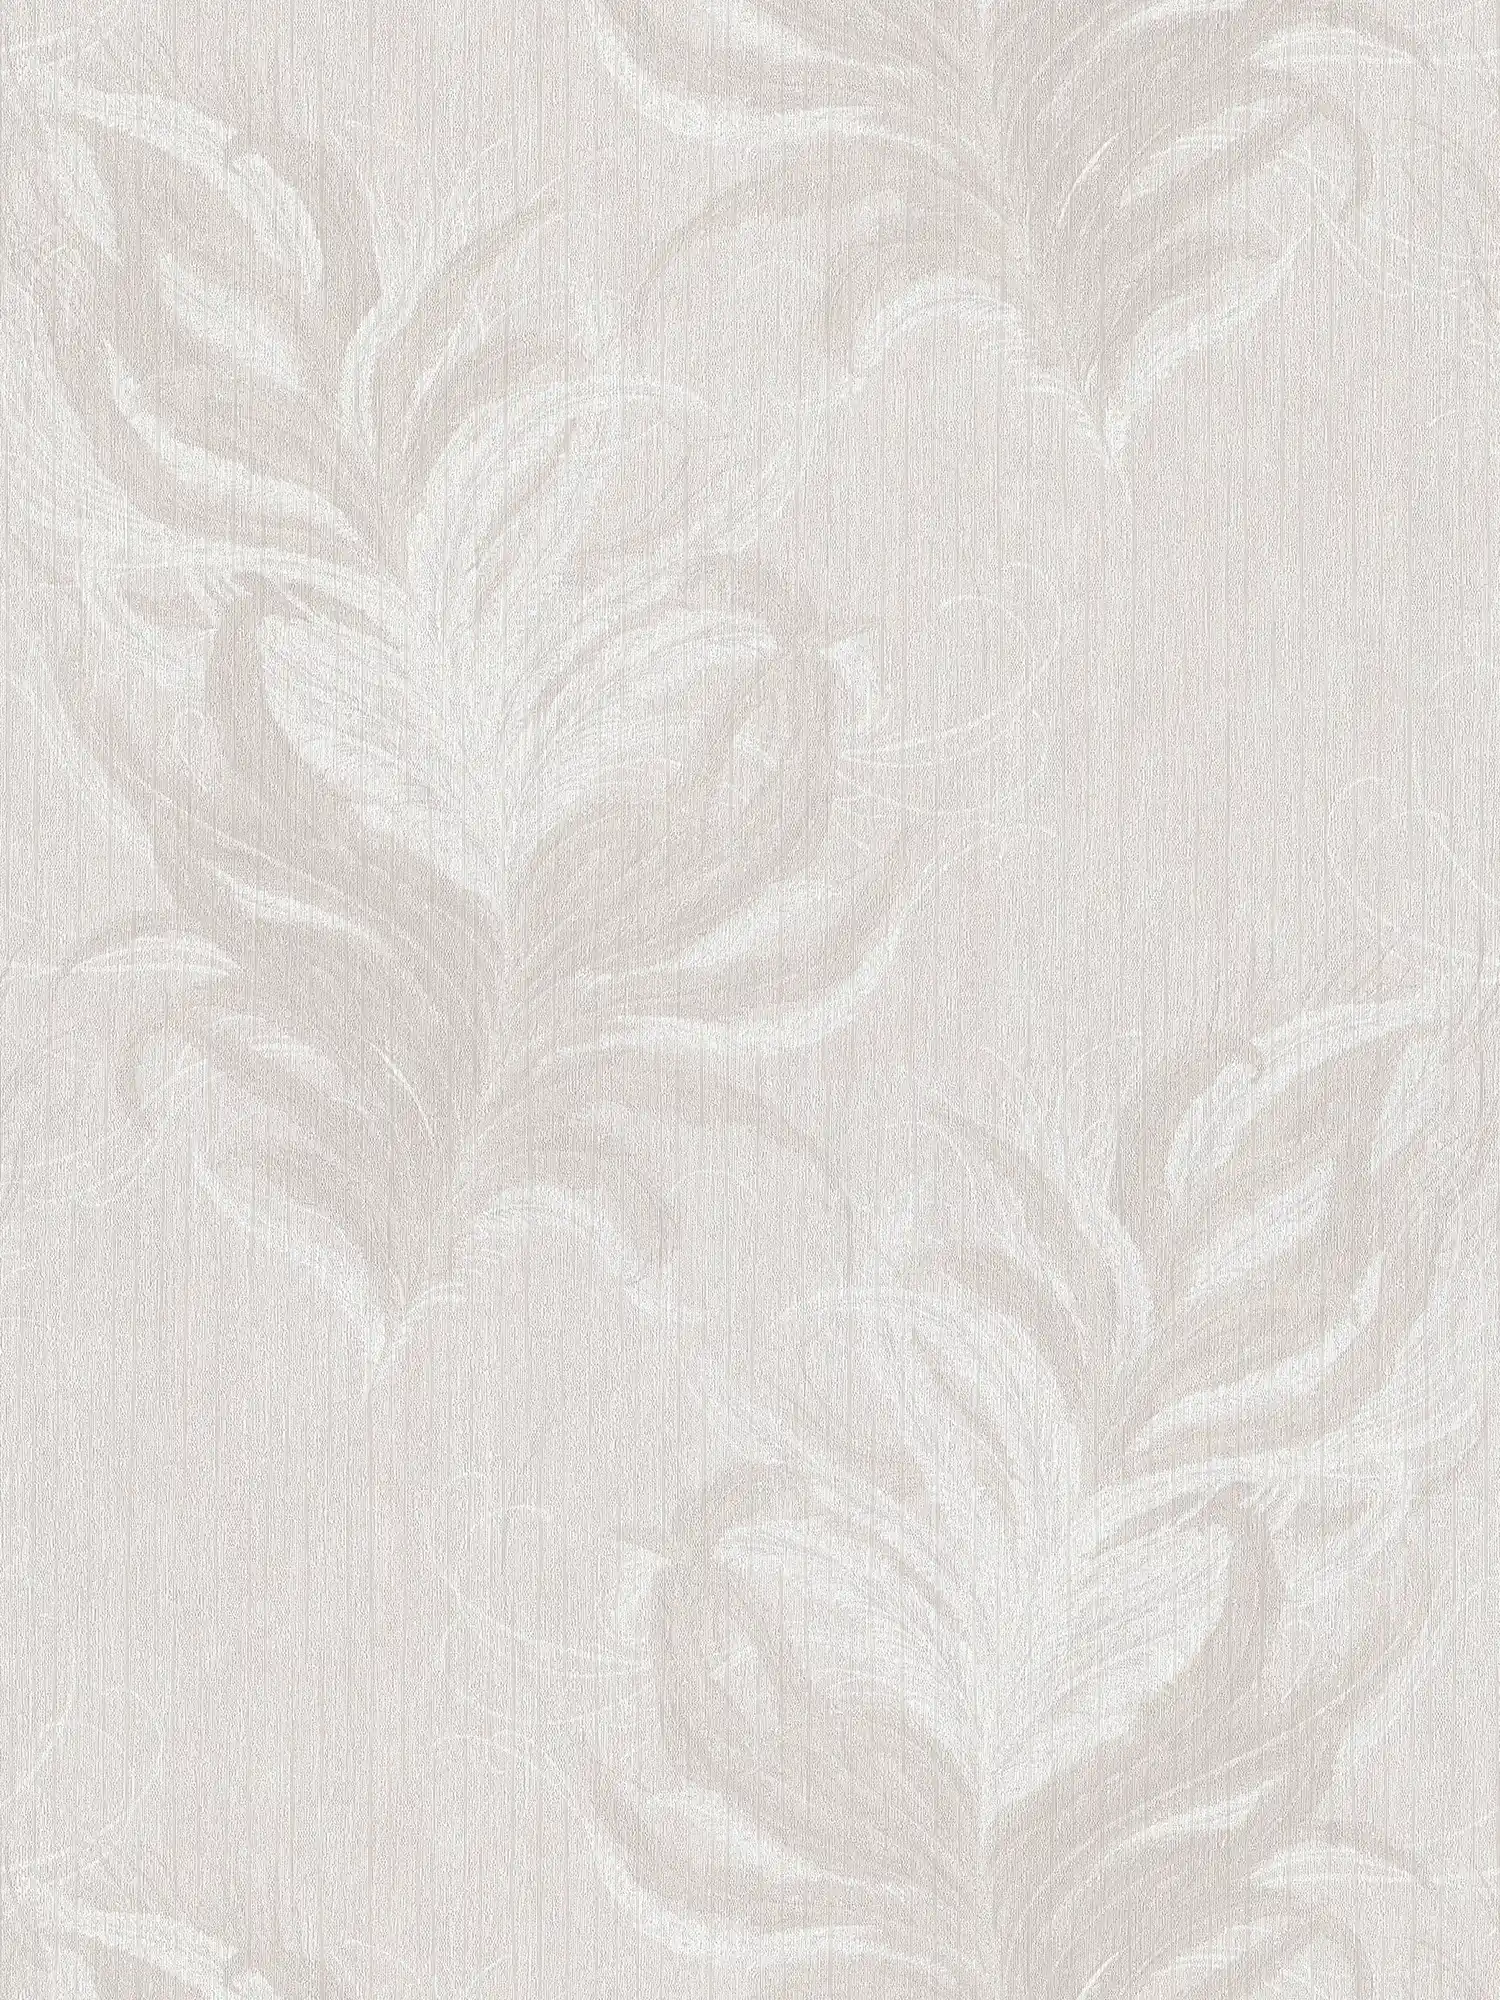 Papel pintado no tejido con diseño de plumas y efecto brillo estructural - blanco, gris
